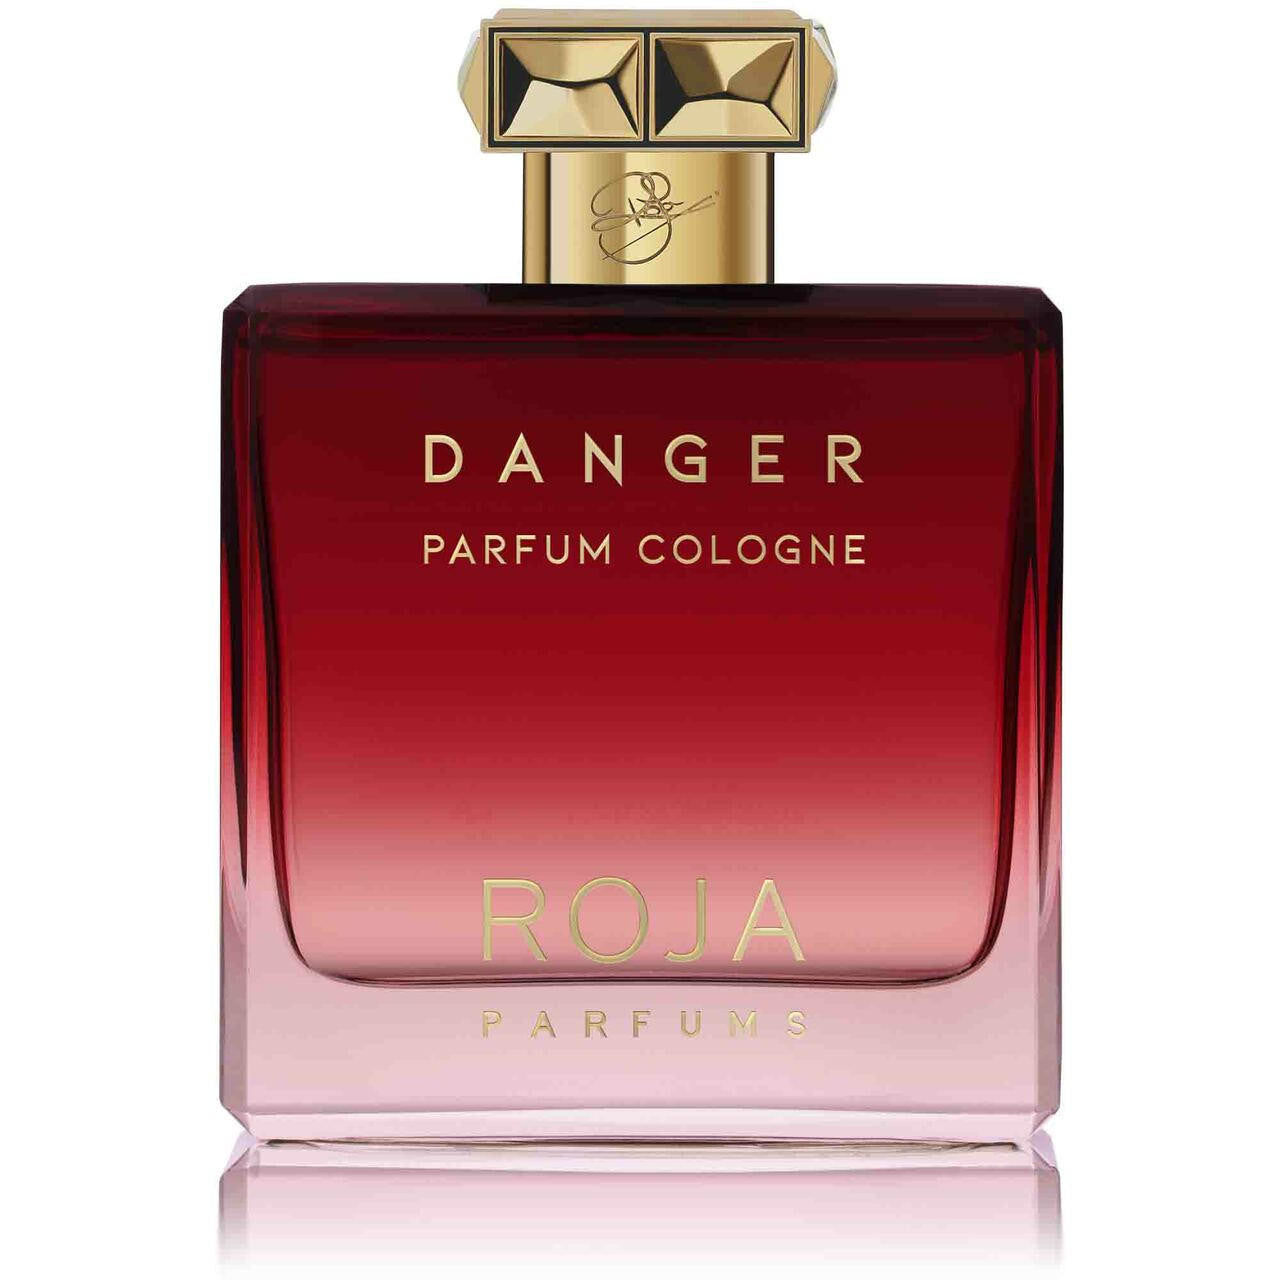 ROJA Roja Pour Homme Danger Parfum Cologne 100ml 